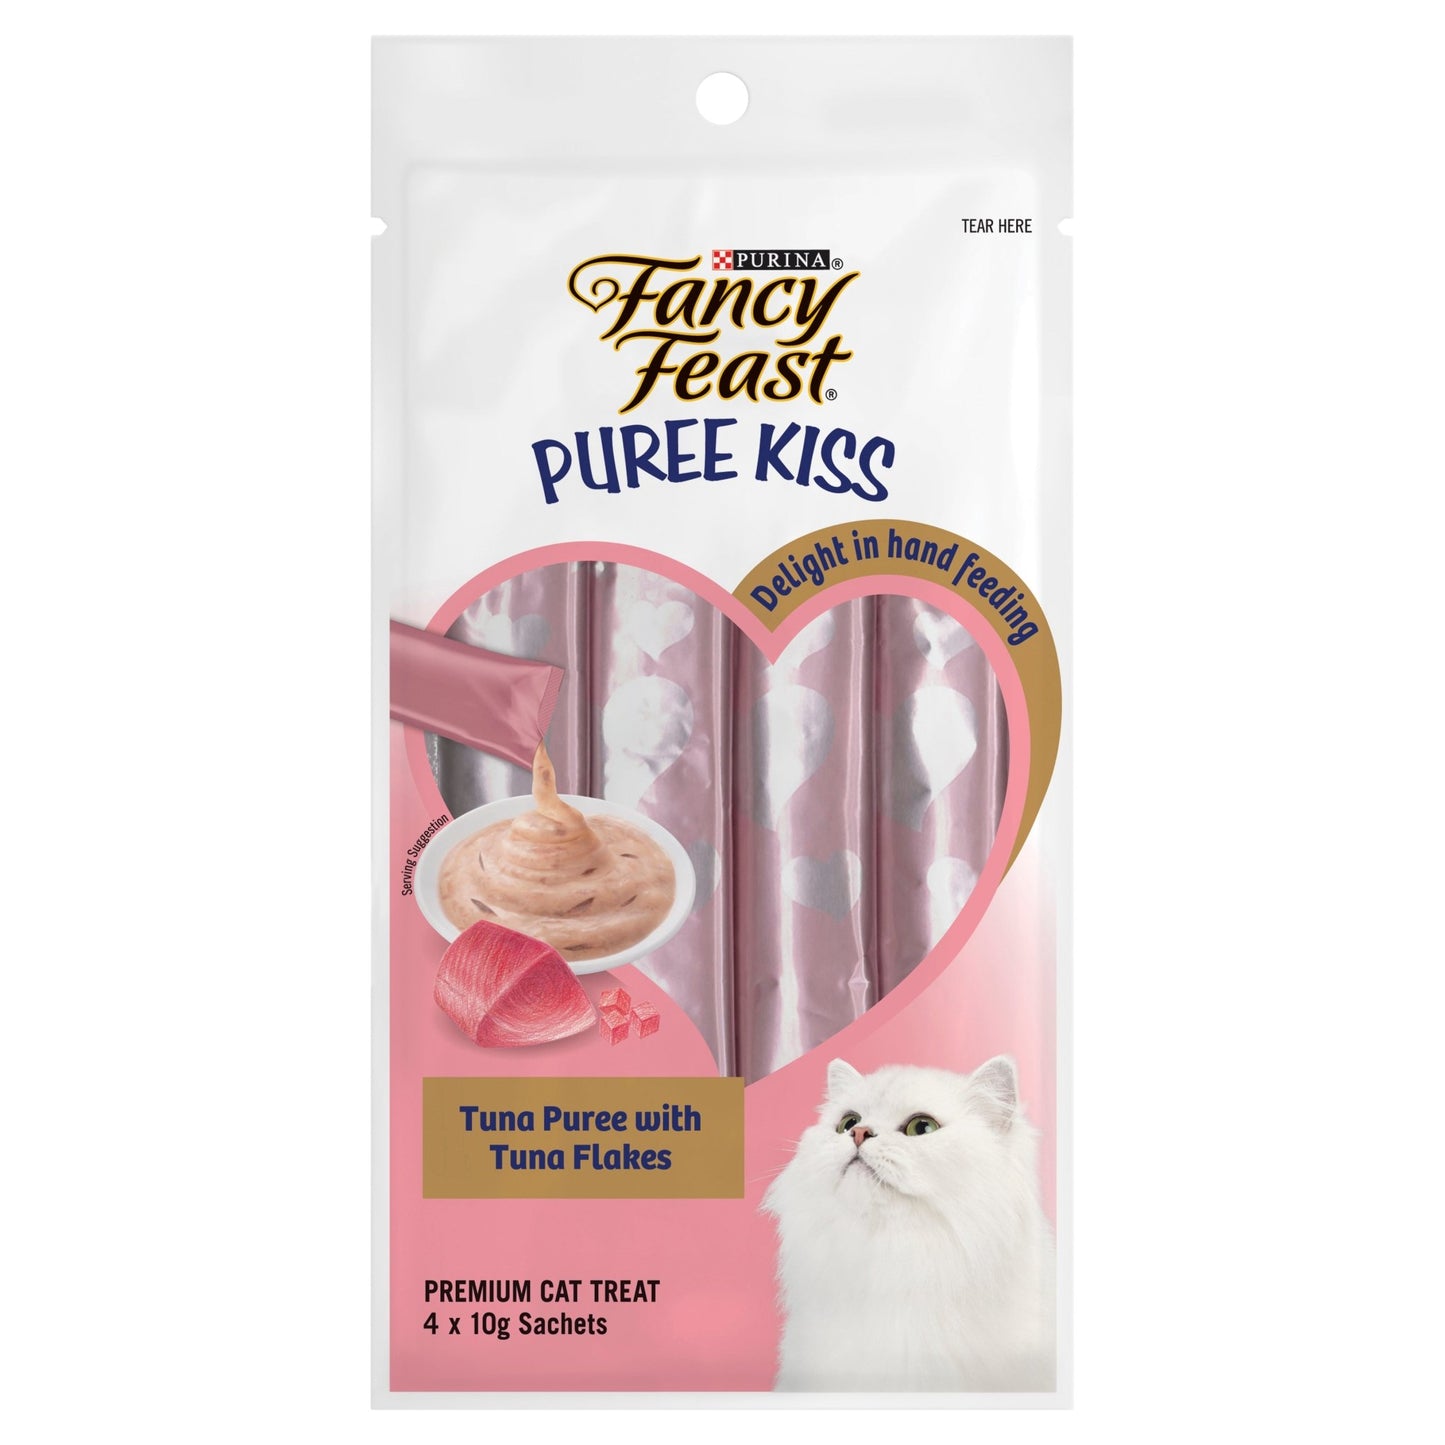 Fancy Feast Puree Kiss Tuna with Tuna Flakes 4x10g - Woonona Petfood & Produce